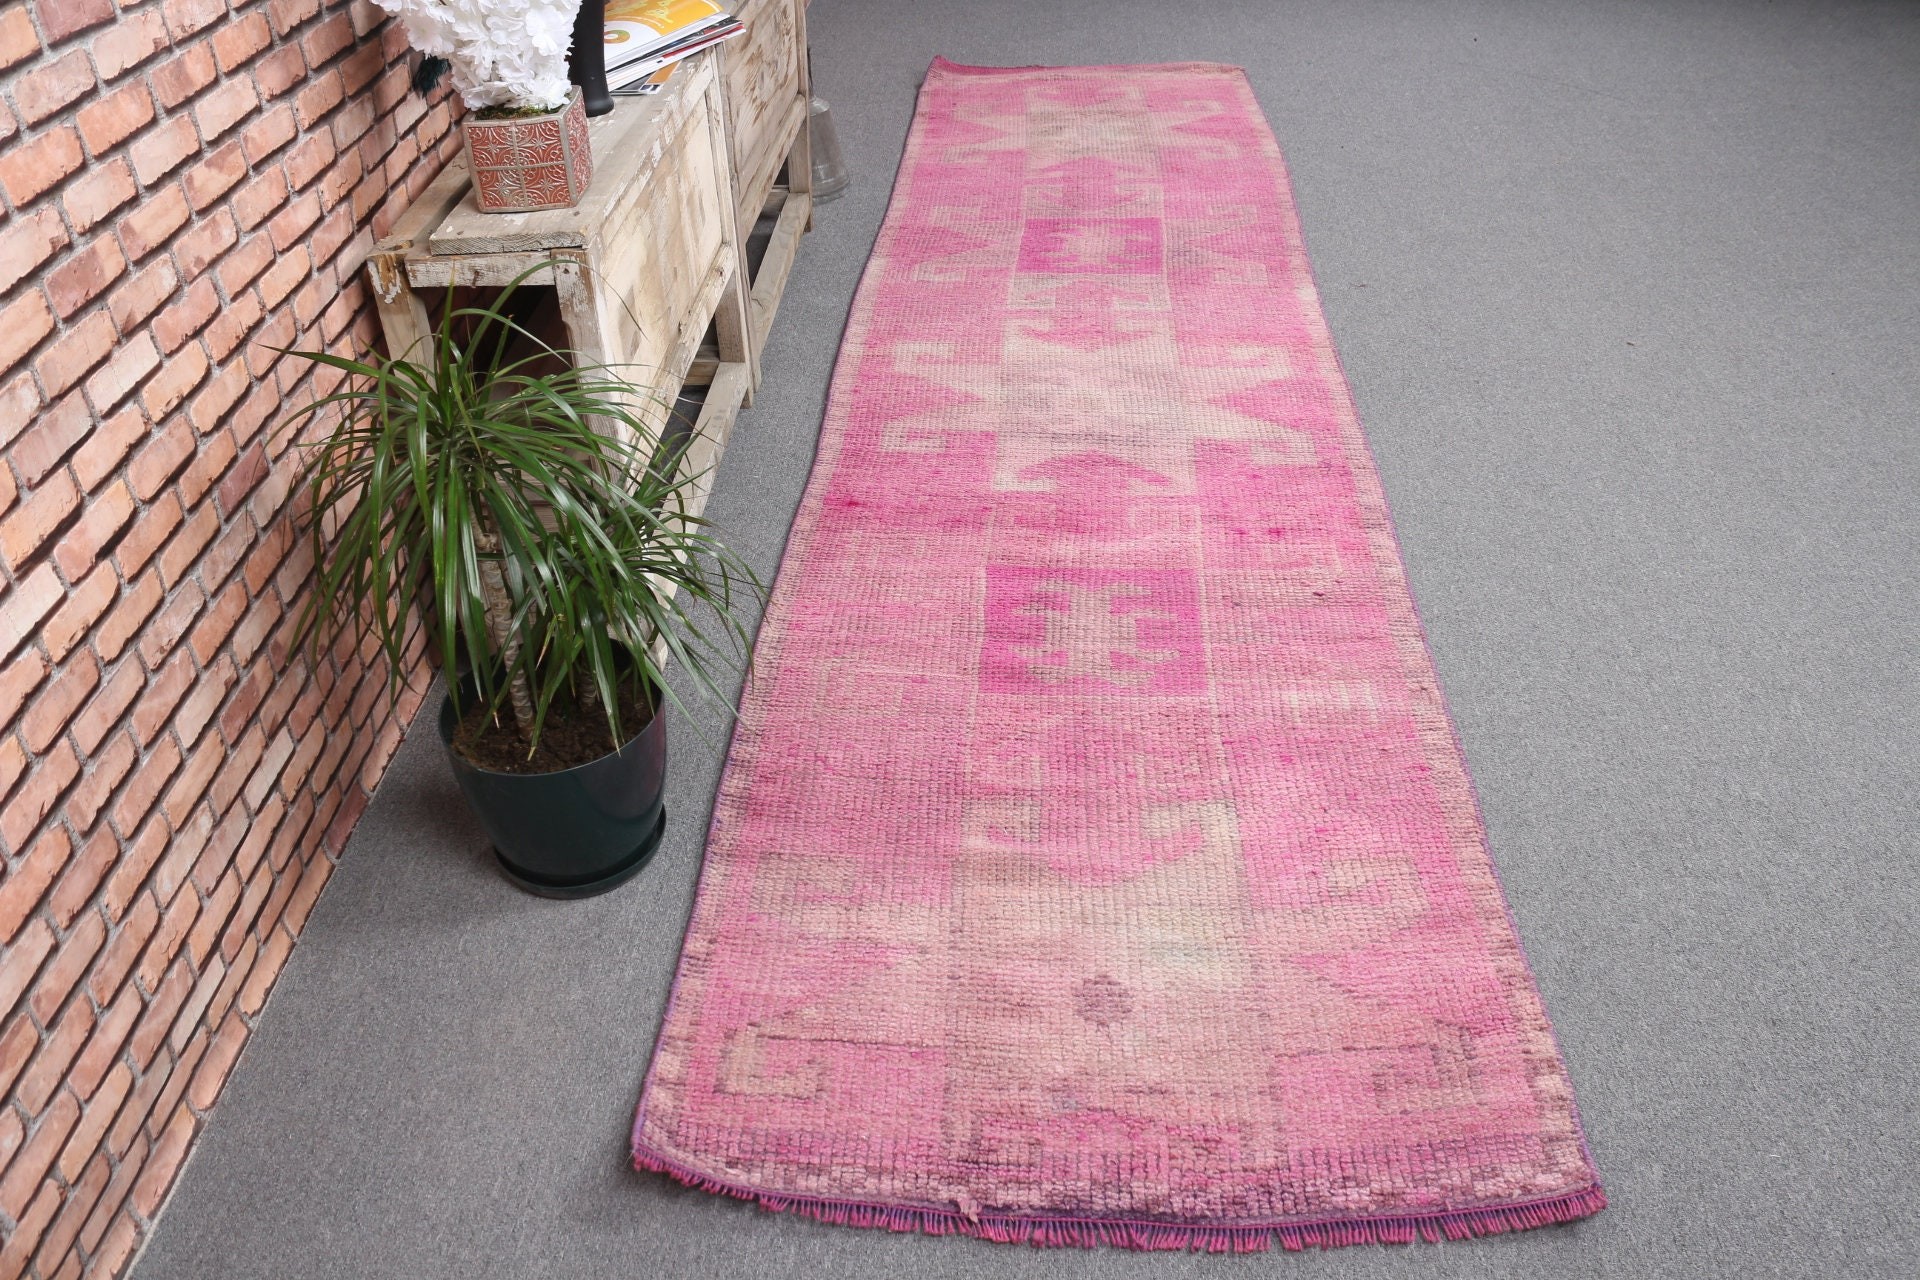 Stair Rug, Corridor Rug, Turkish Rug, Pink Oriental Rug, Anatolian Rug, Oriental Rug, Vintage Rugs, Handwoven Rug, 2.9x11.6 ft Runner Rug